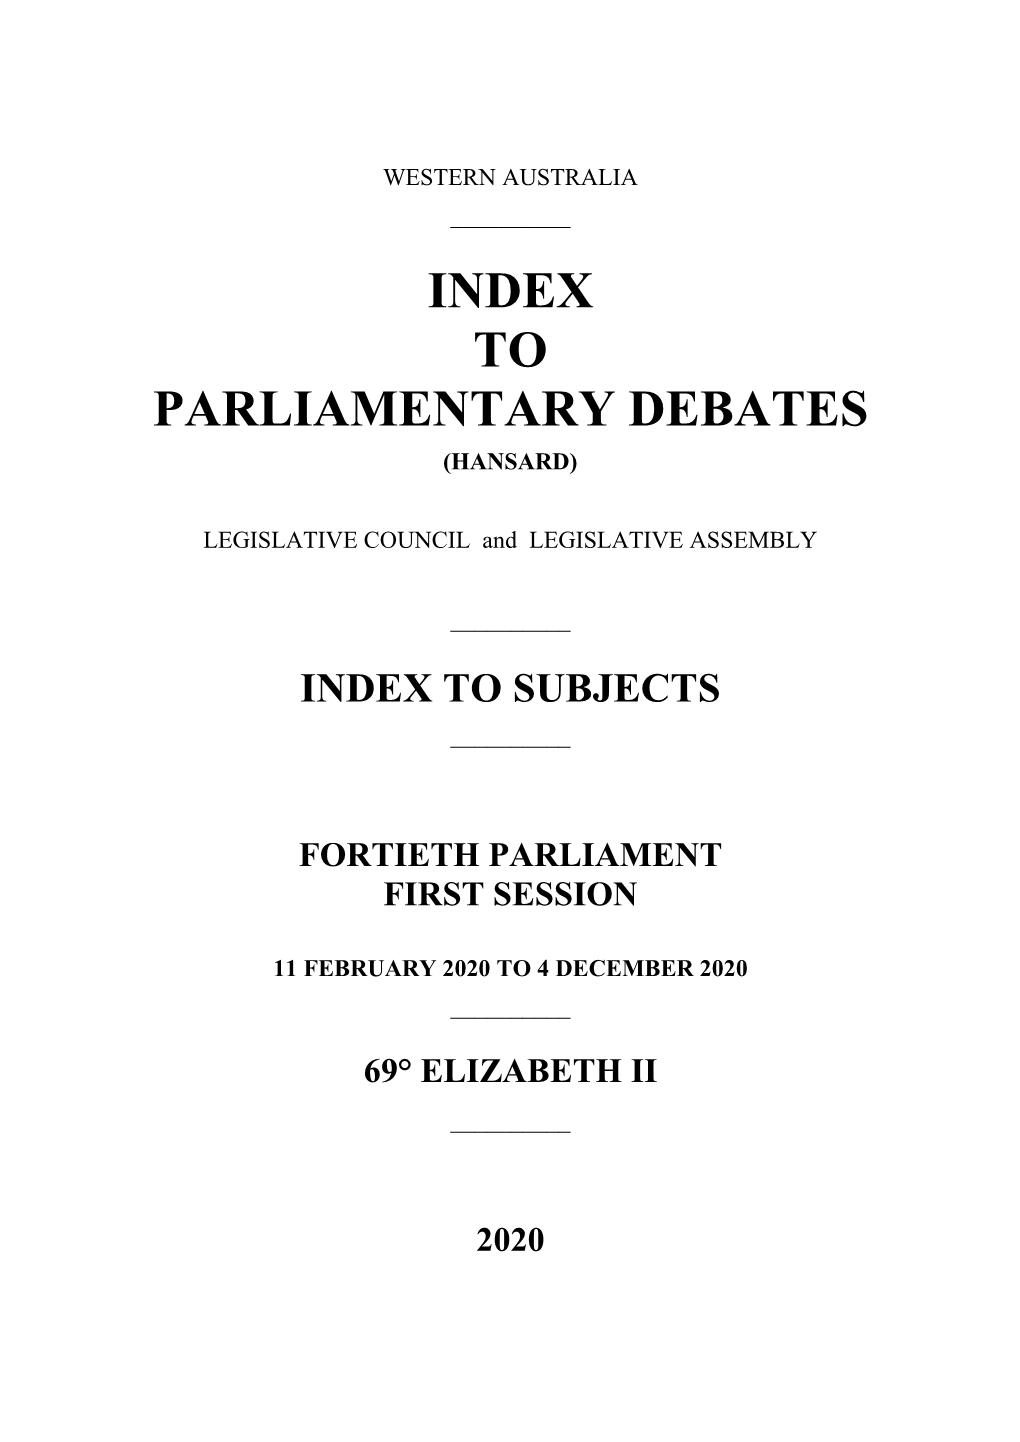 To Parliamentary Debates (Hansard)